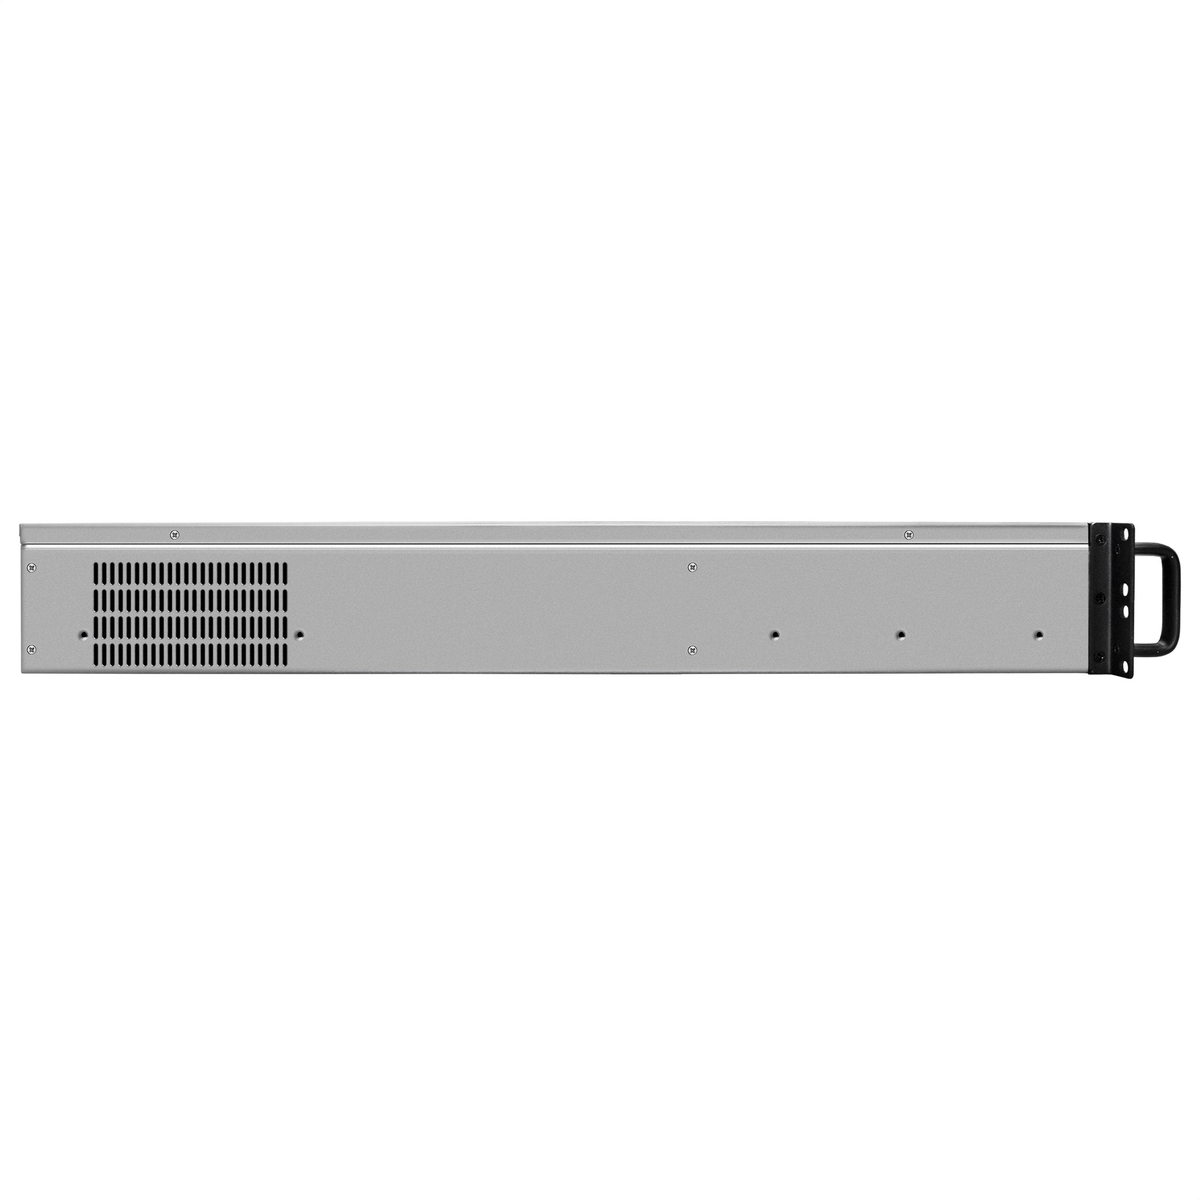 Server case ExeGate Pro 2U660-HS06/800ADS